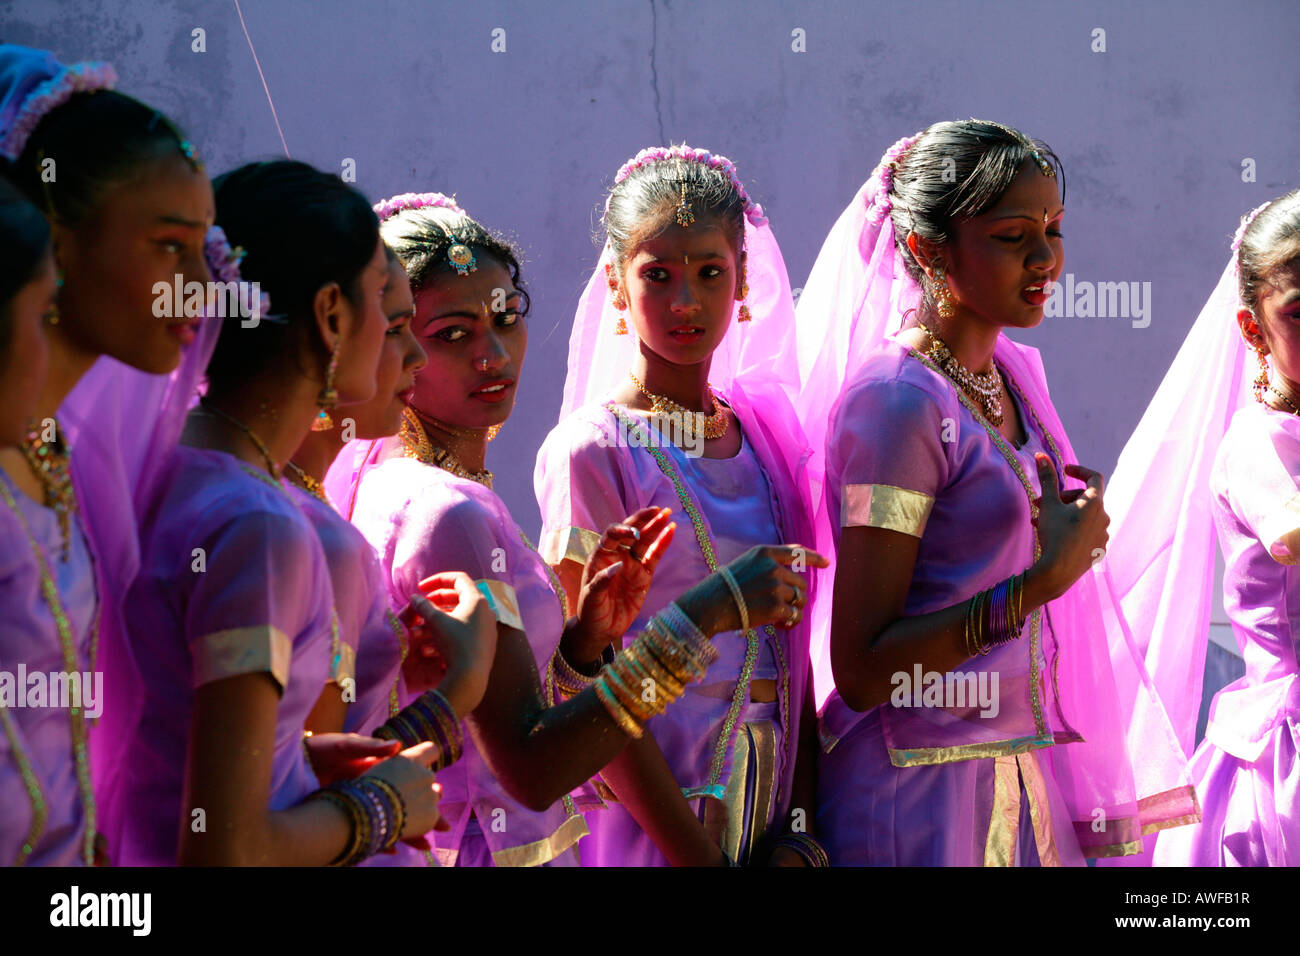 Les filles de l'ethnie indienne lors d'une fête hindoue à Georgetown, Guyana, en Amérique du Sud Banque D'Images